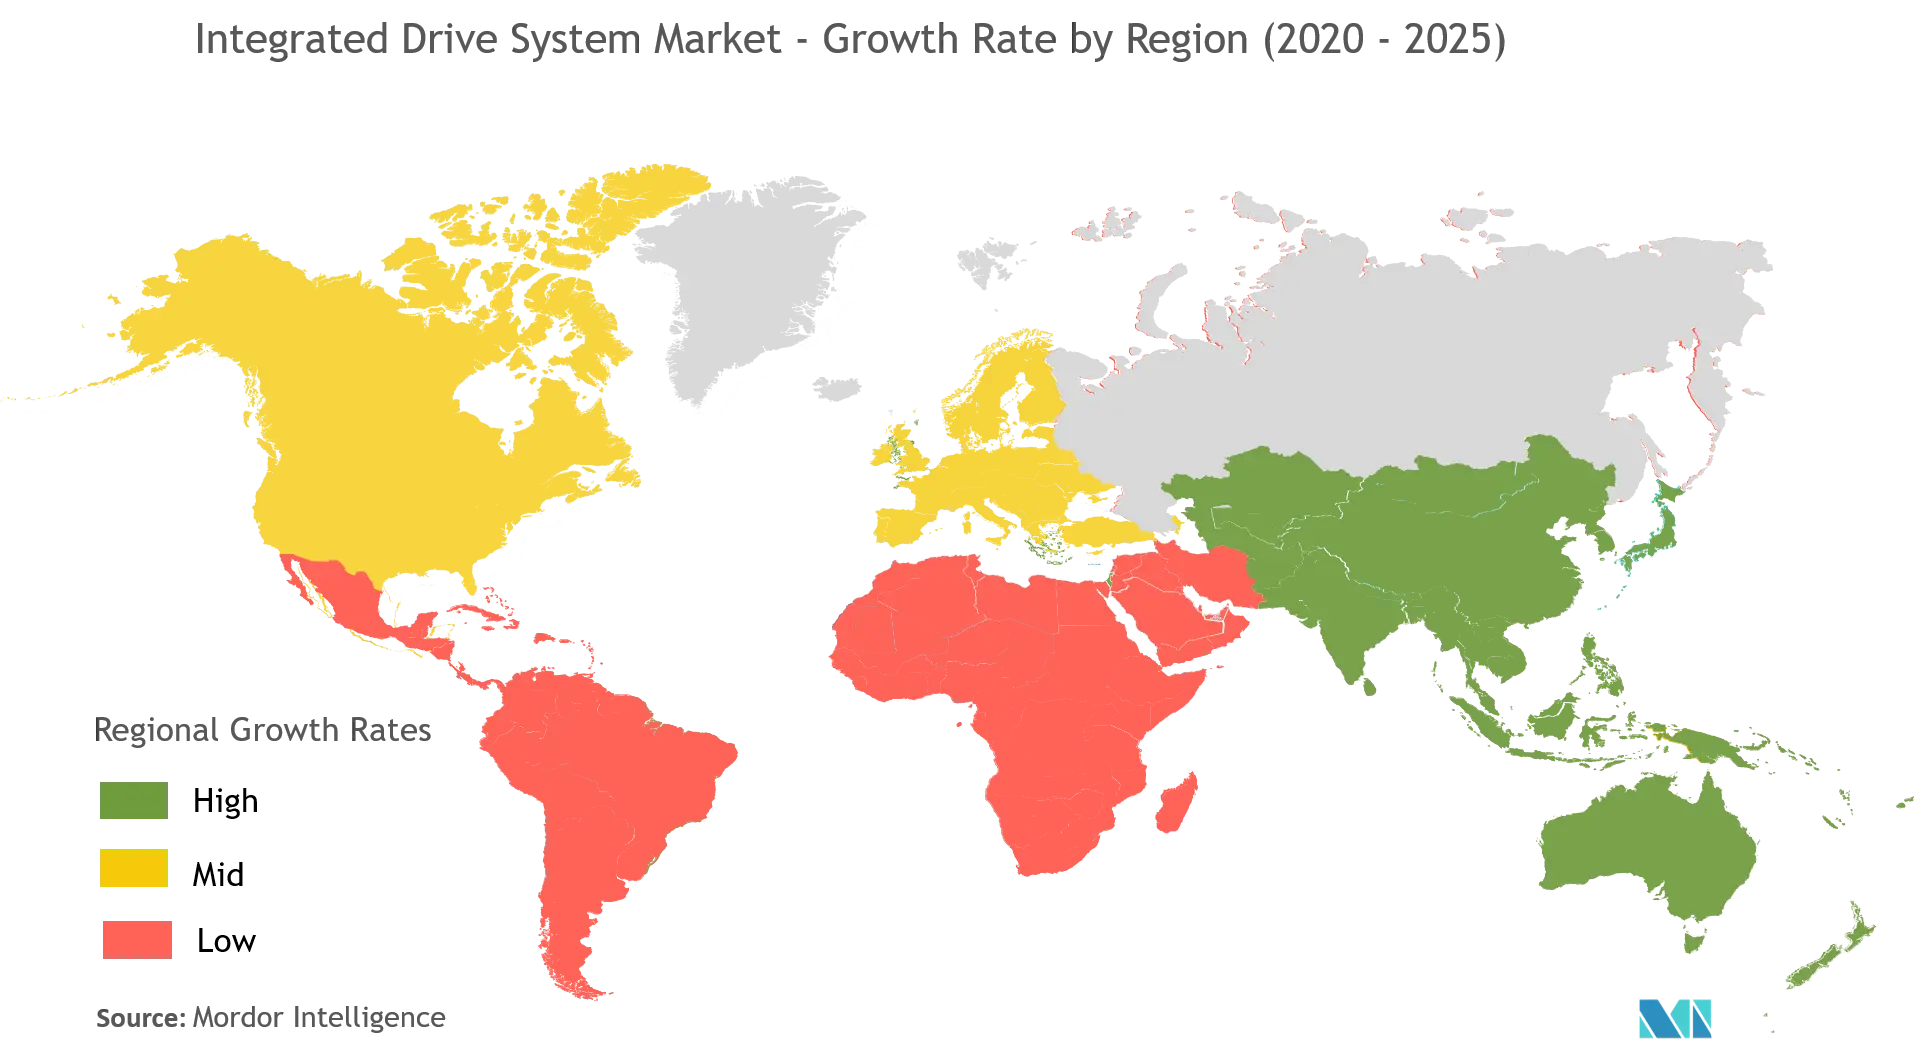 Thị trường hệ thống truyền động tích hợp - Tốc độ tăng trưởng theo khu vực (2020 - 2025)